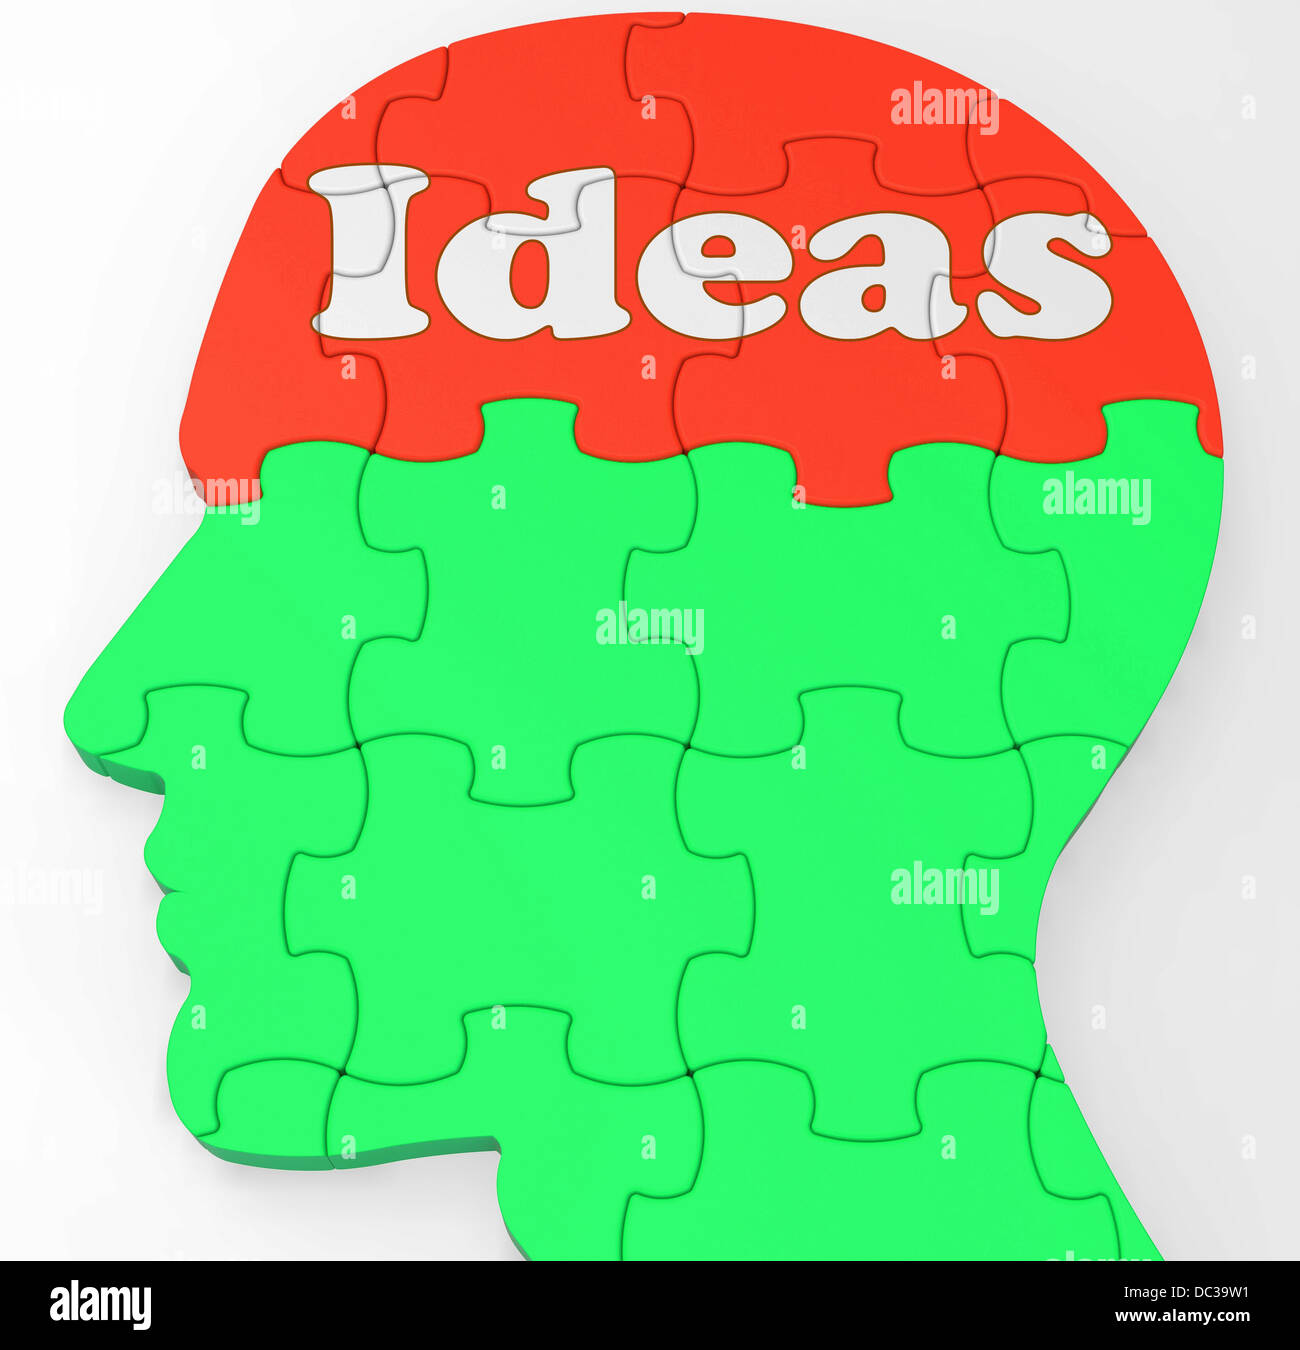 L'esprit des idées ou pensées indique une amélioration de la créativité Banque D'Images